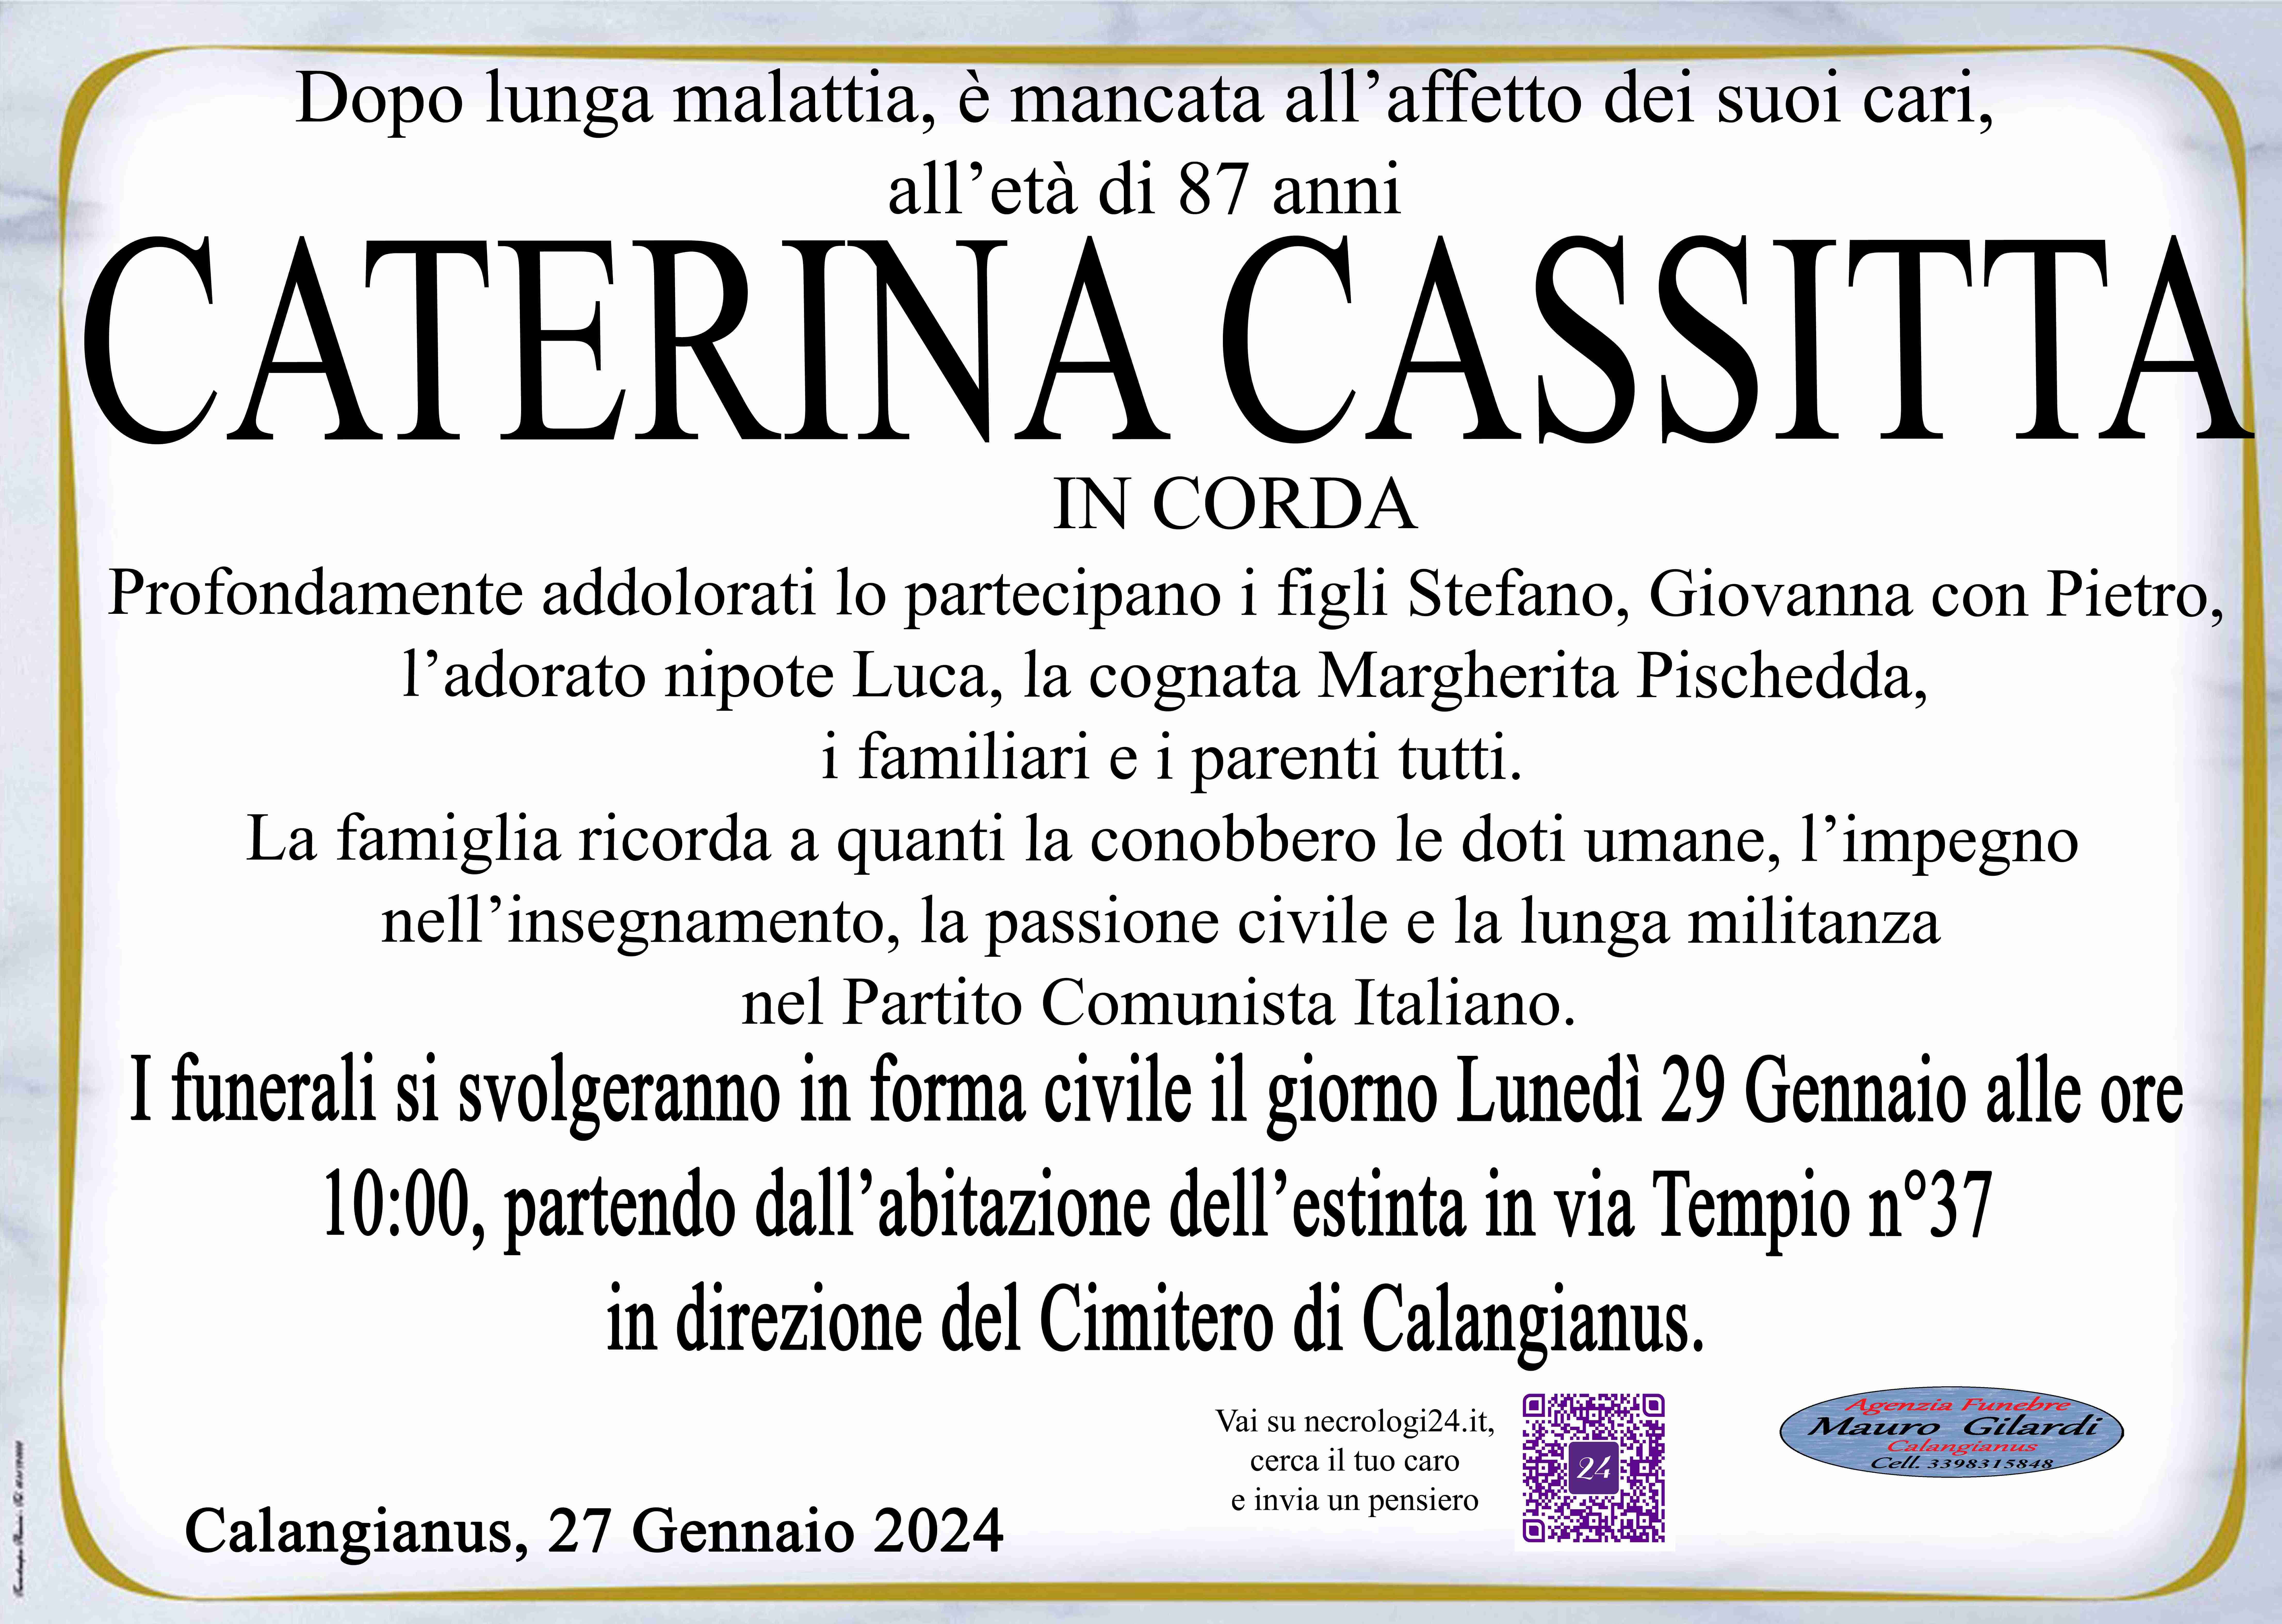 Caterina Cassitta